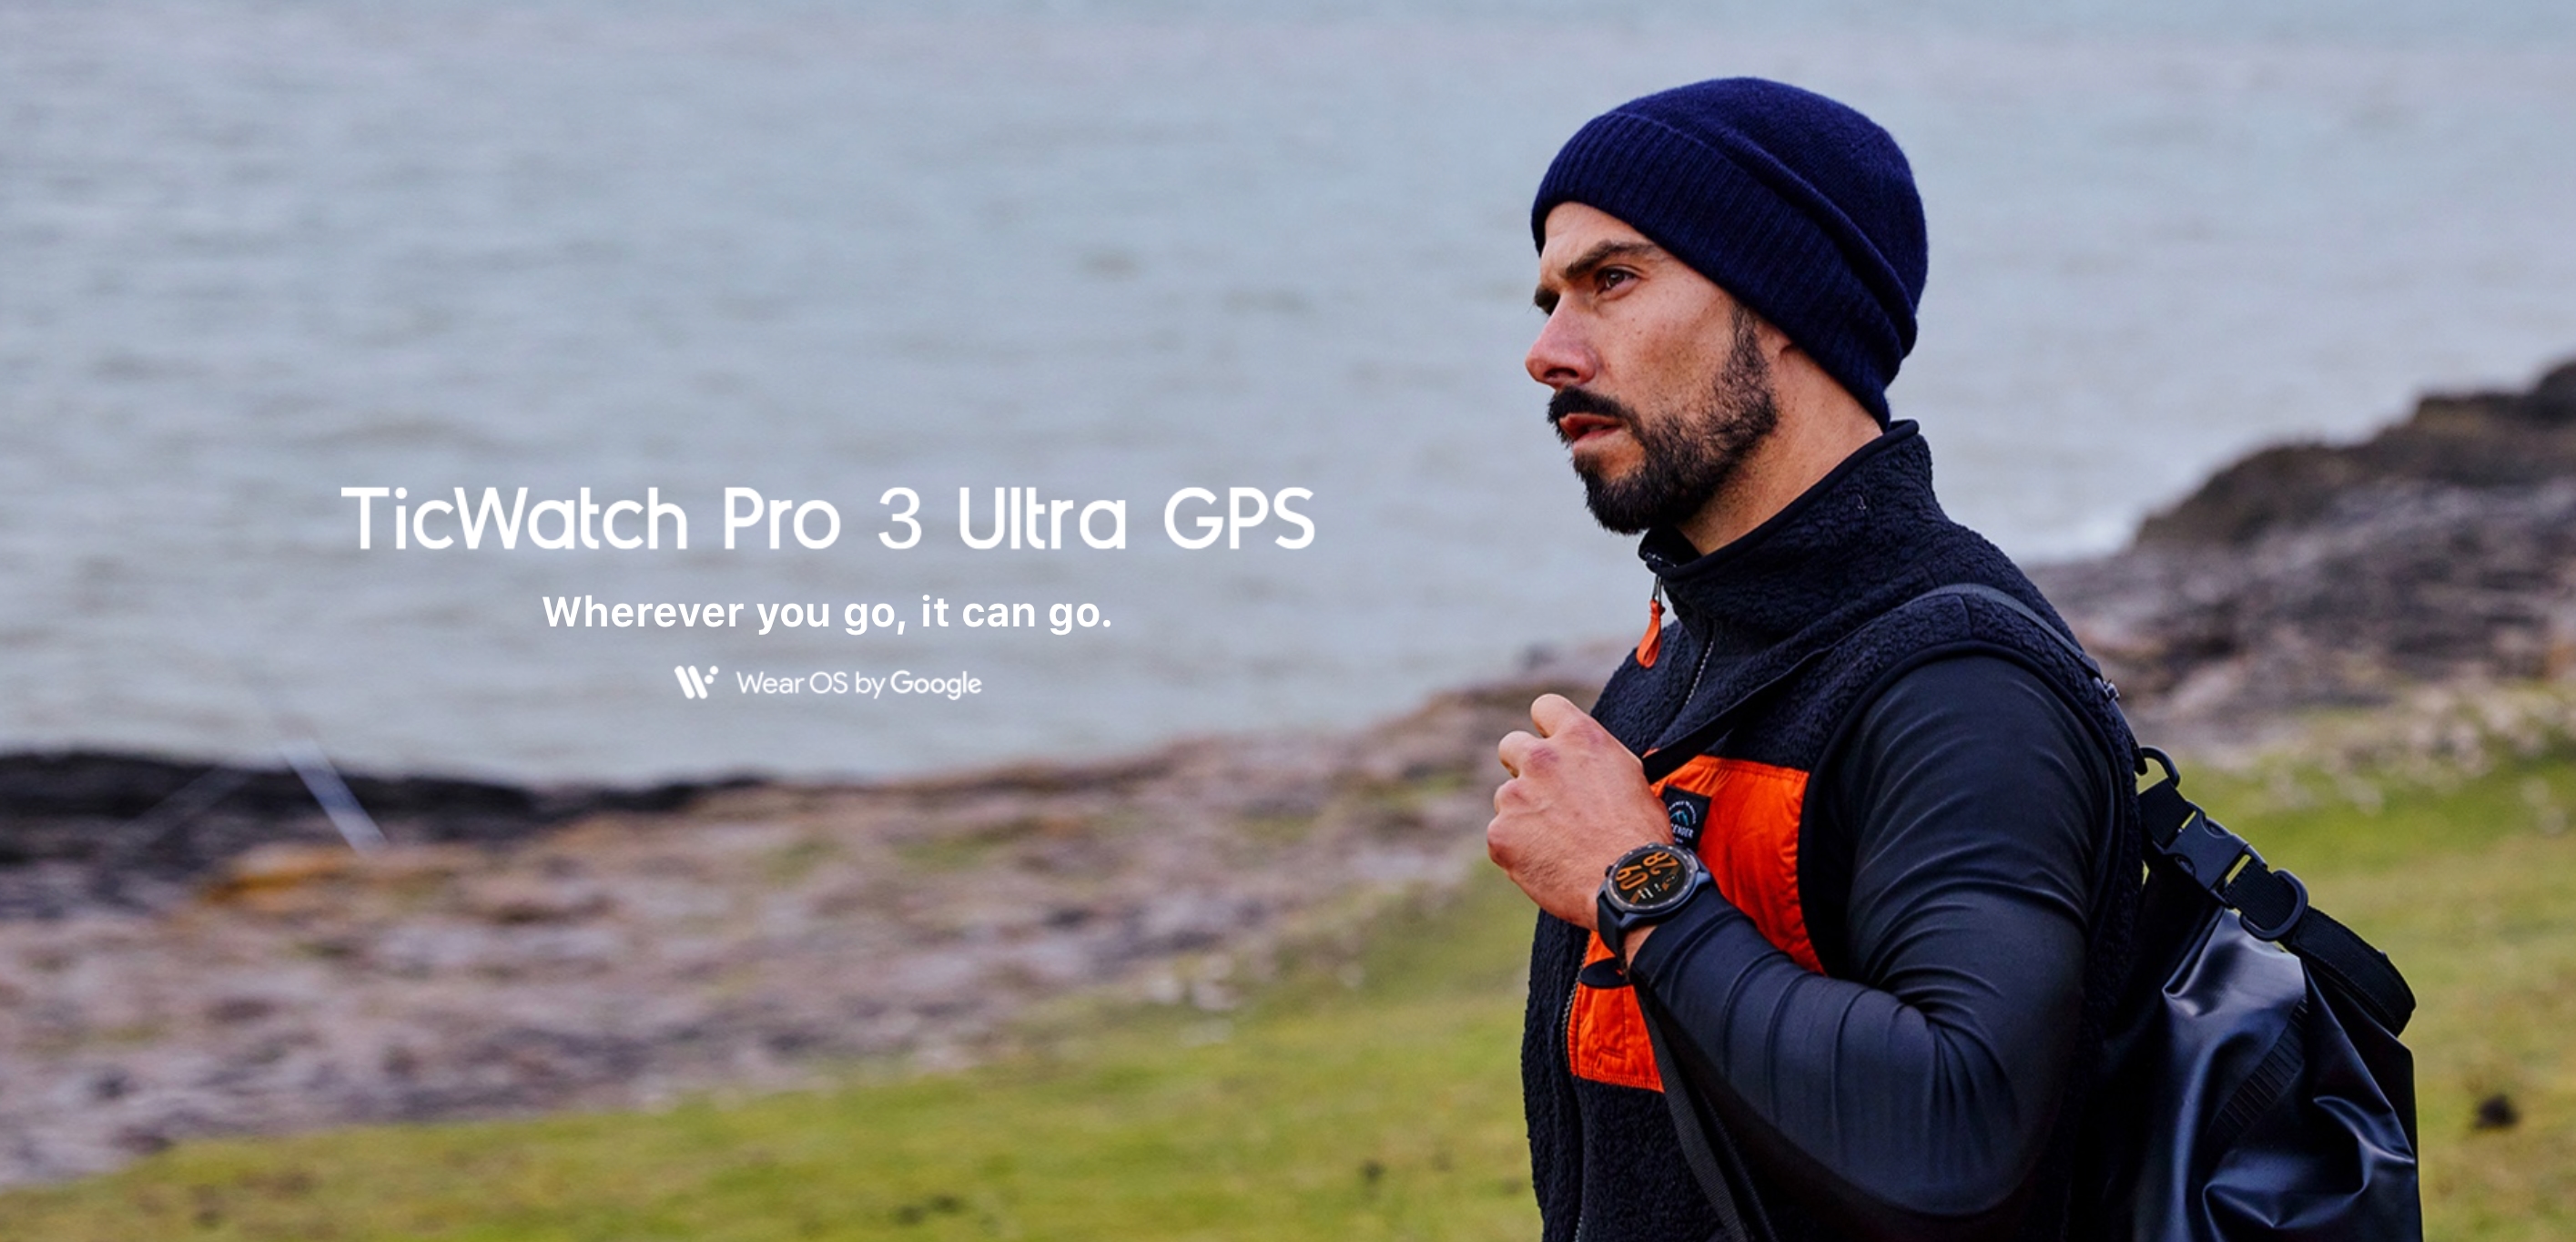 Mobvoi TicWatch Pro 3 Ultra GPS : smartwatch Wear OS avec double écran, puce Snapdragon Wear 4100 et jusqu'à 45 jours d'autonomie pour 299 $